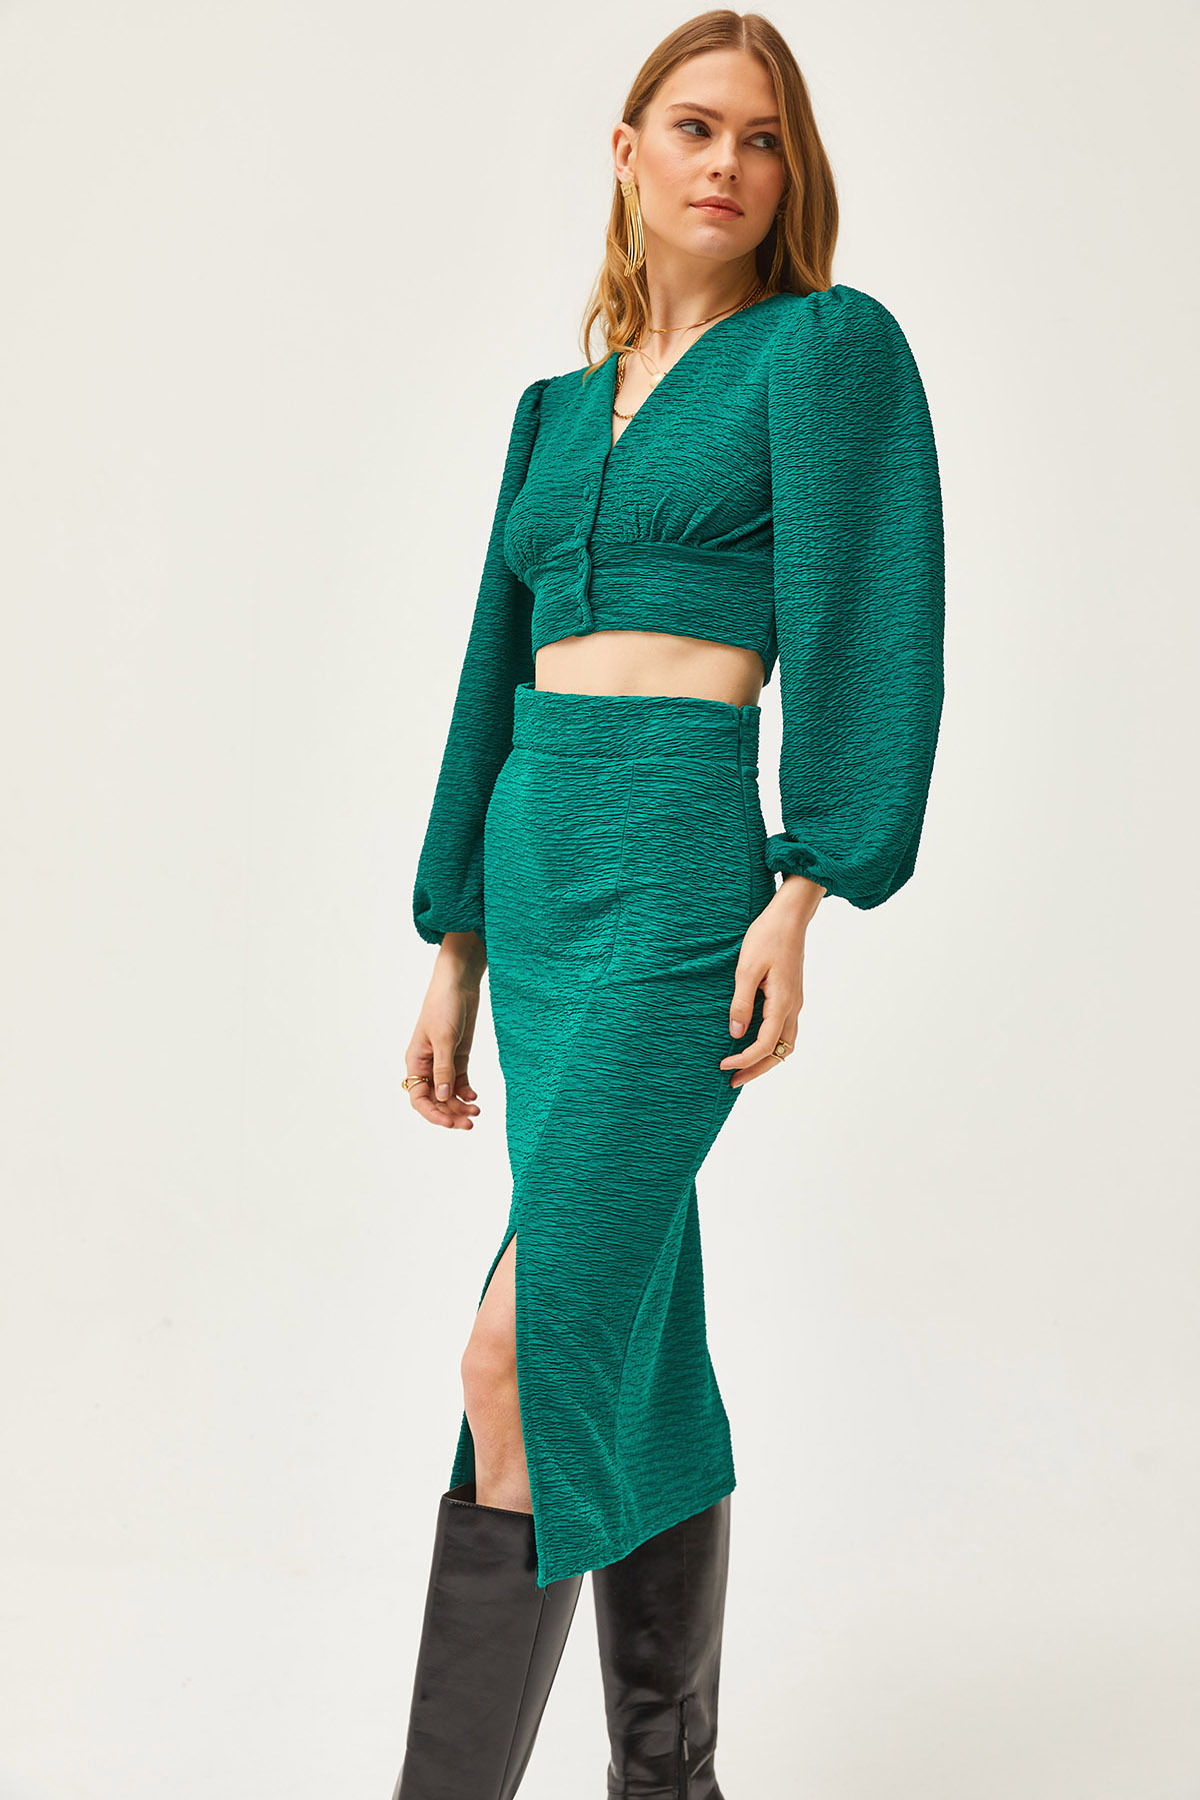 Olalook Women's Petrol Green Slit Skirt Knitted Suit